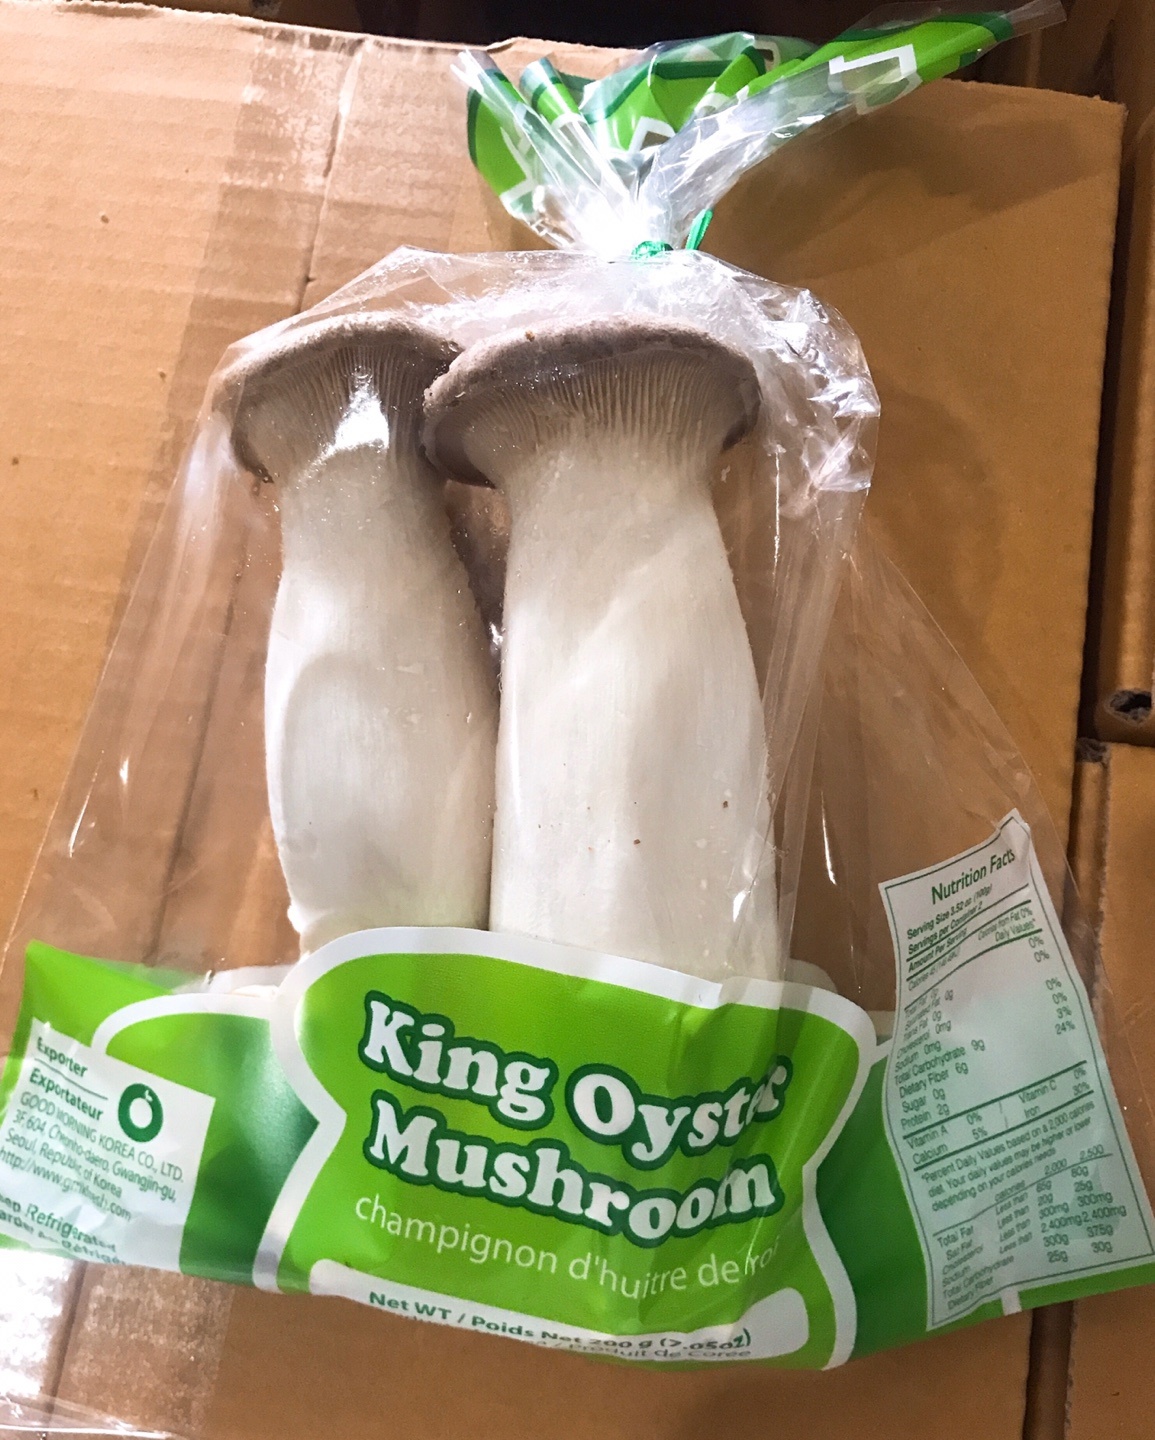 King Oyster Mushroom(Eryngii)